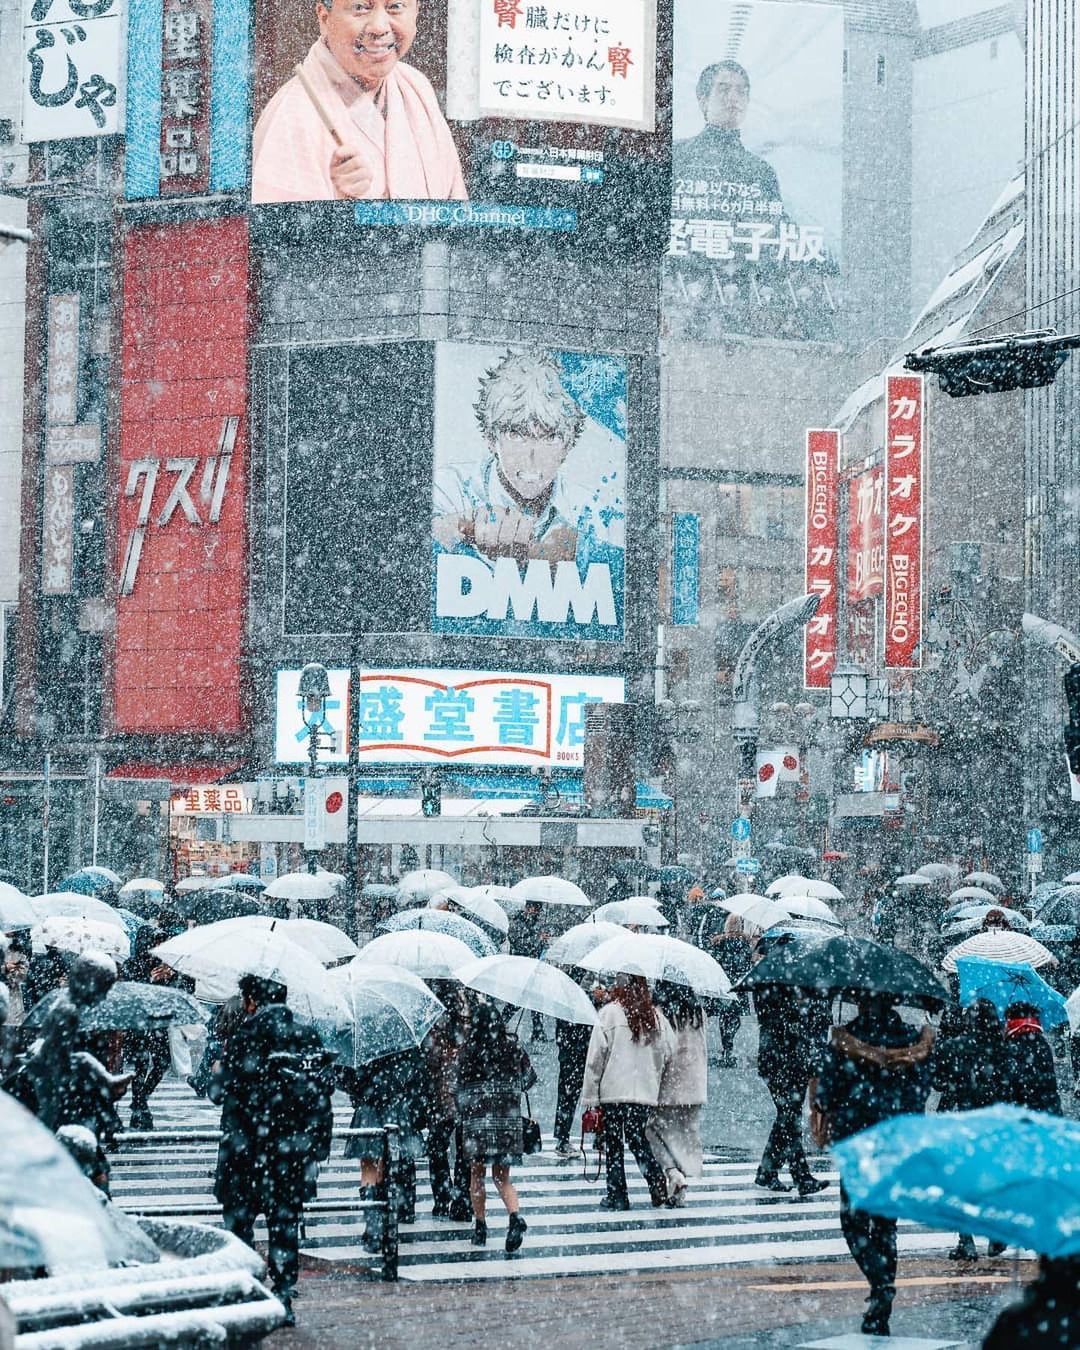 Bức ảnh nổi tiếng về Tokyo tuyết trắng sẽ đưa bạn đến một thế giới tiên tuyết đầy lãng mạn và tuyệt đẹp. Hòa mình cùng cảnh sắc thơ mộng, để trải nghiệm một chuyến du lịch đáng nhớ tại Tokyo.